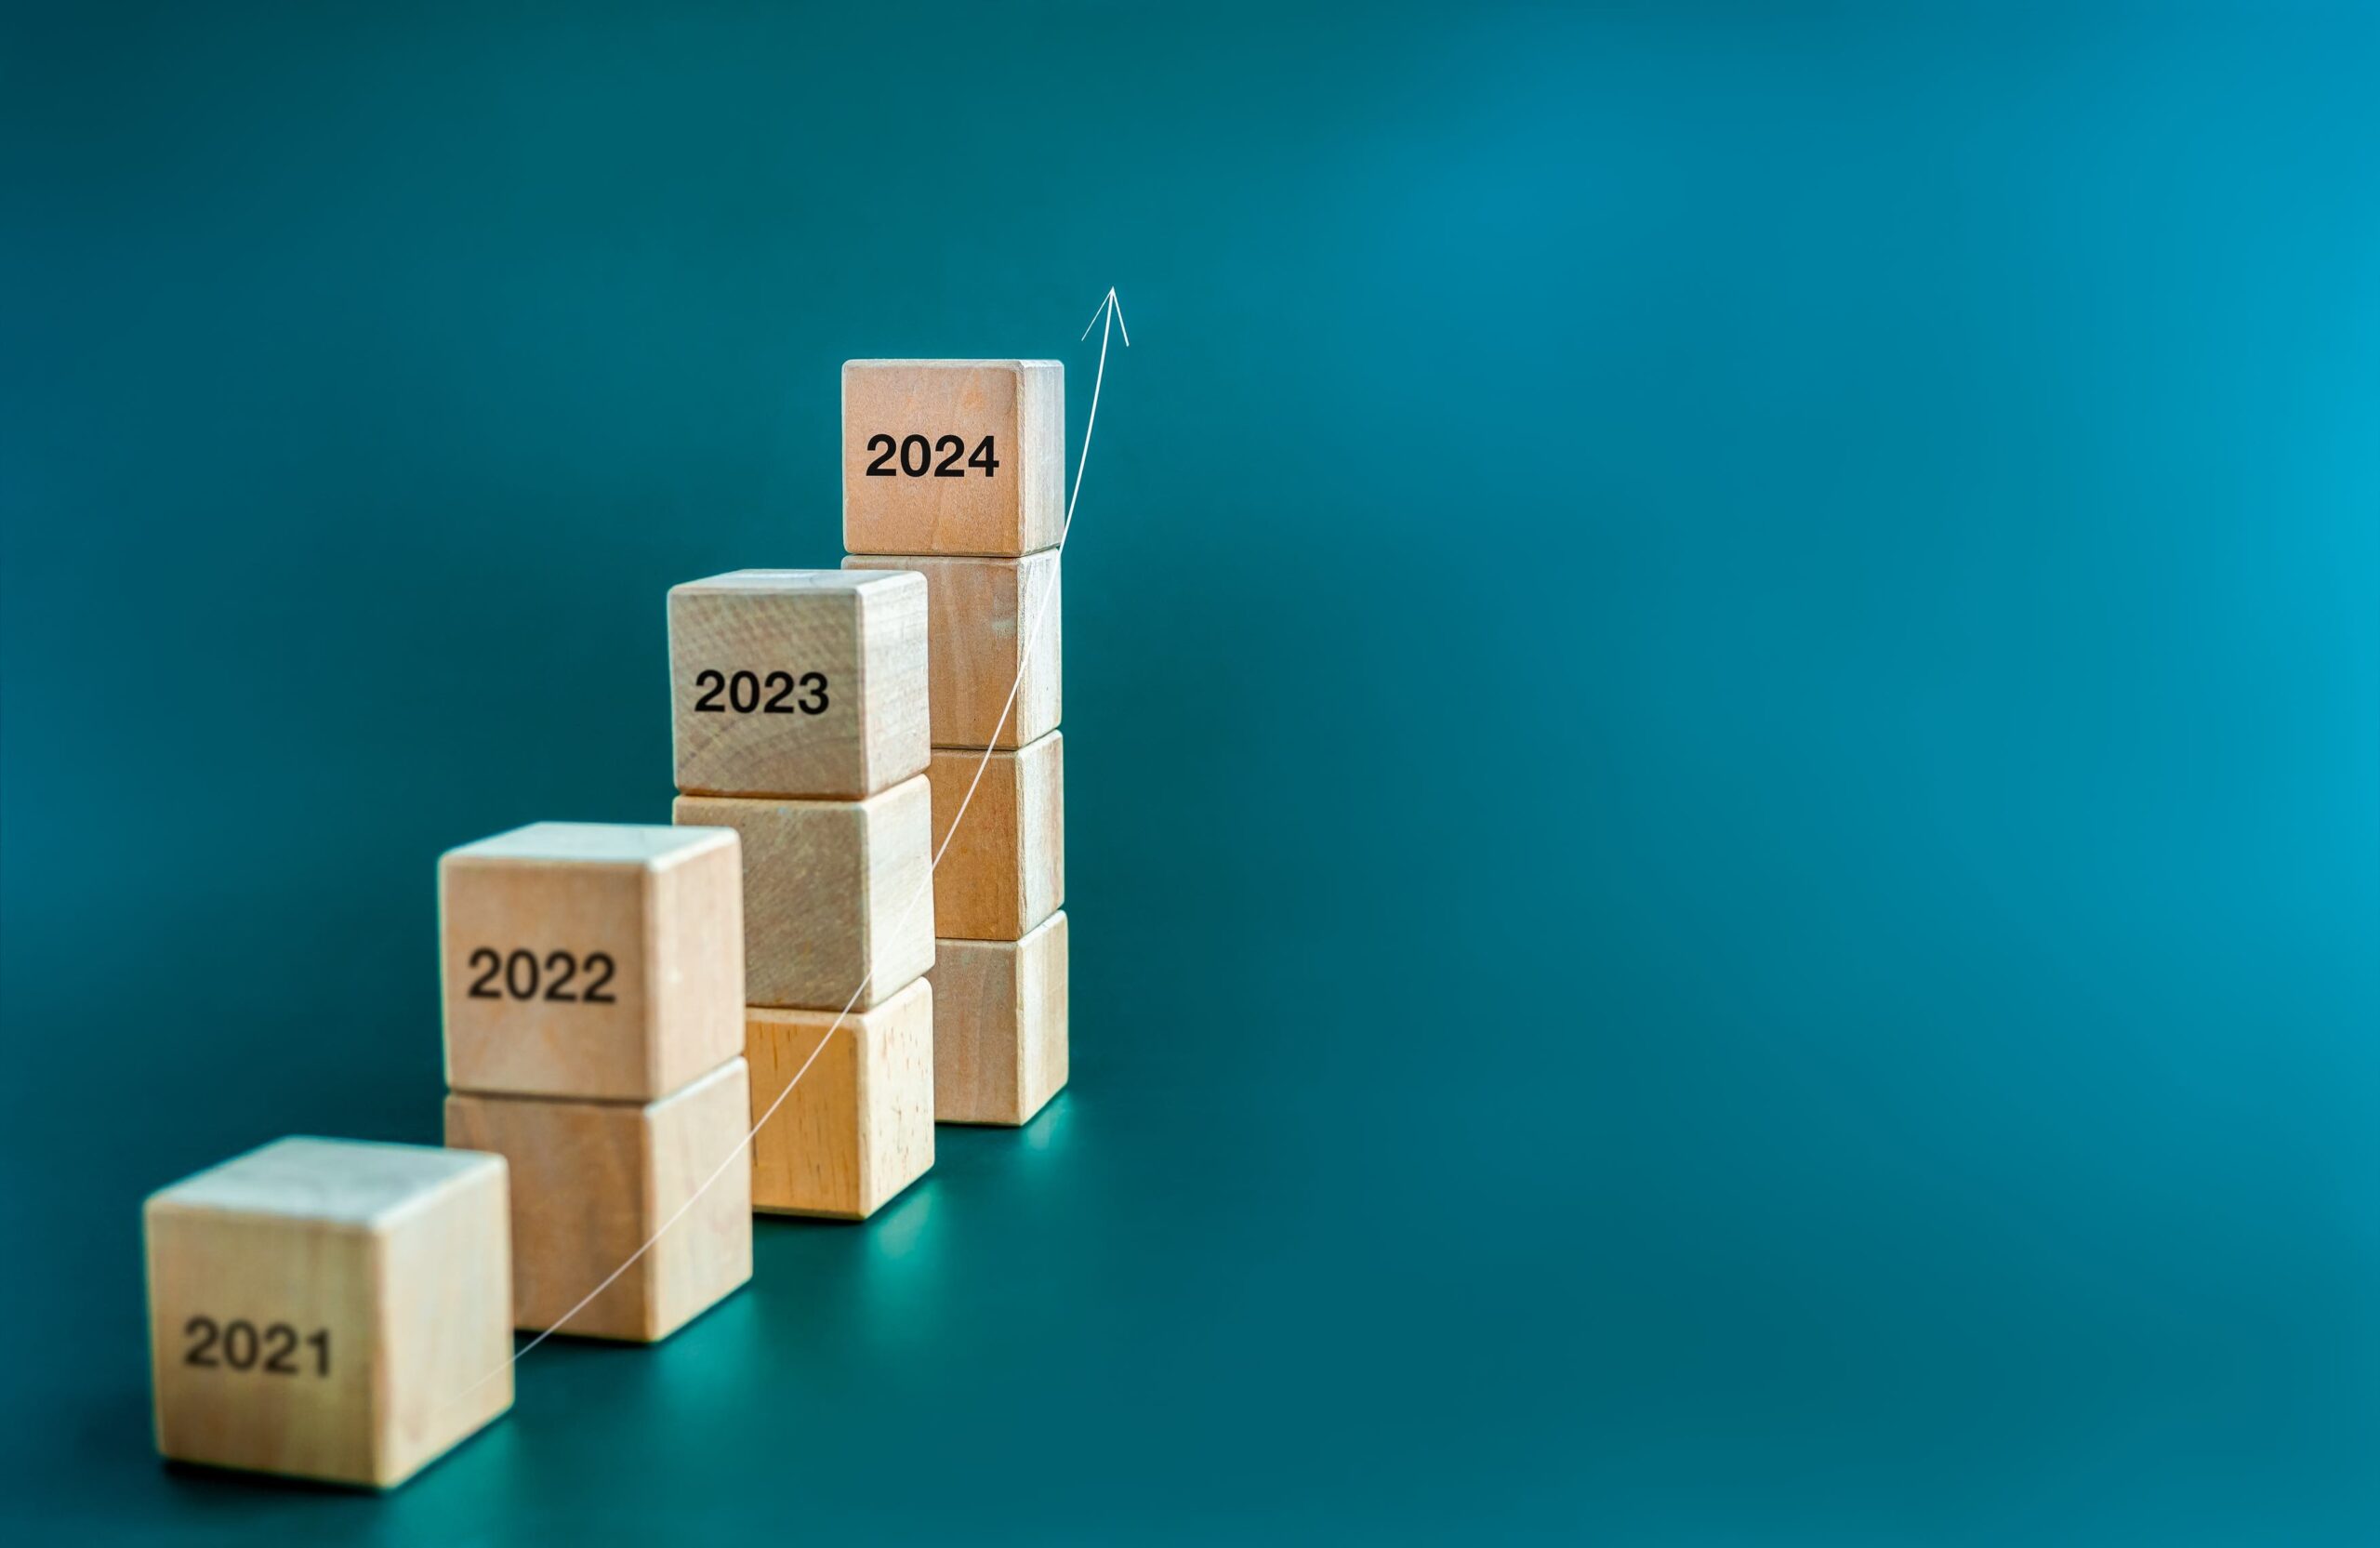 Pequenas pilhas de blocos em altura ascendente com os anos 2021-2024 gravados para indicar a passagem do tempo.